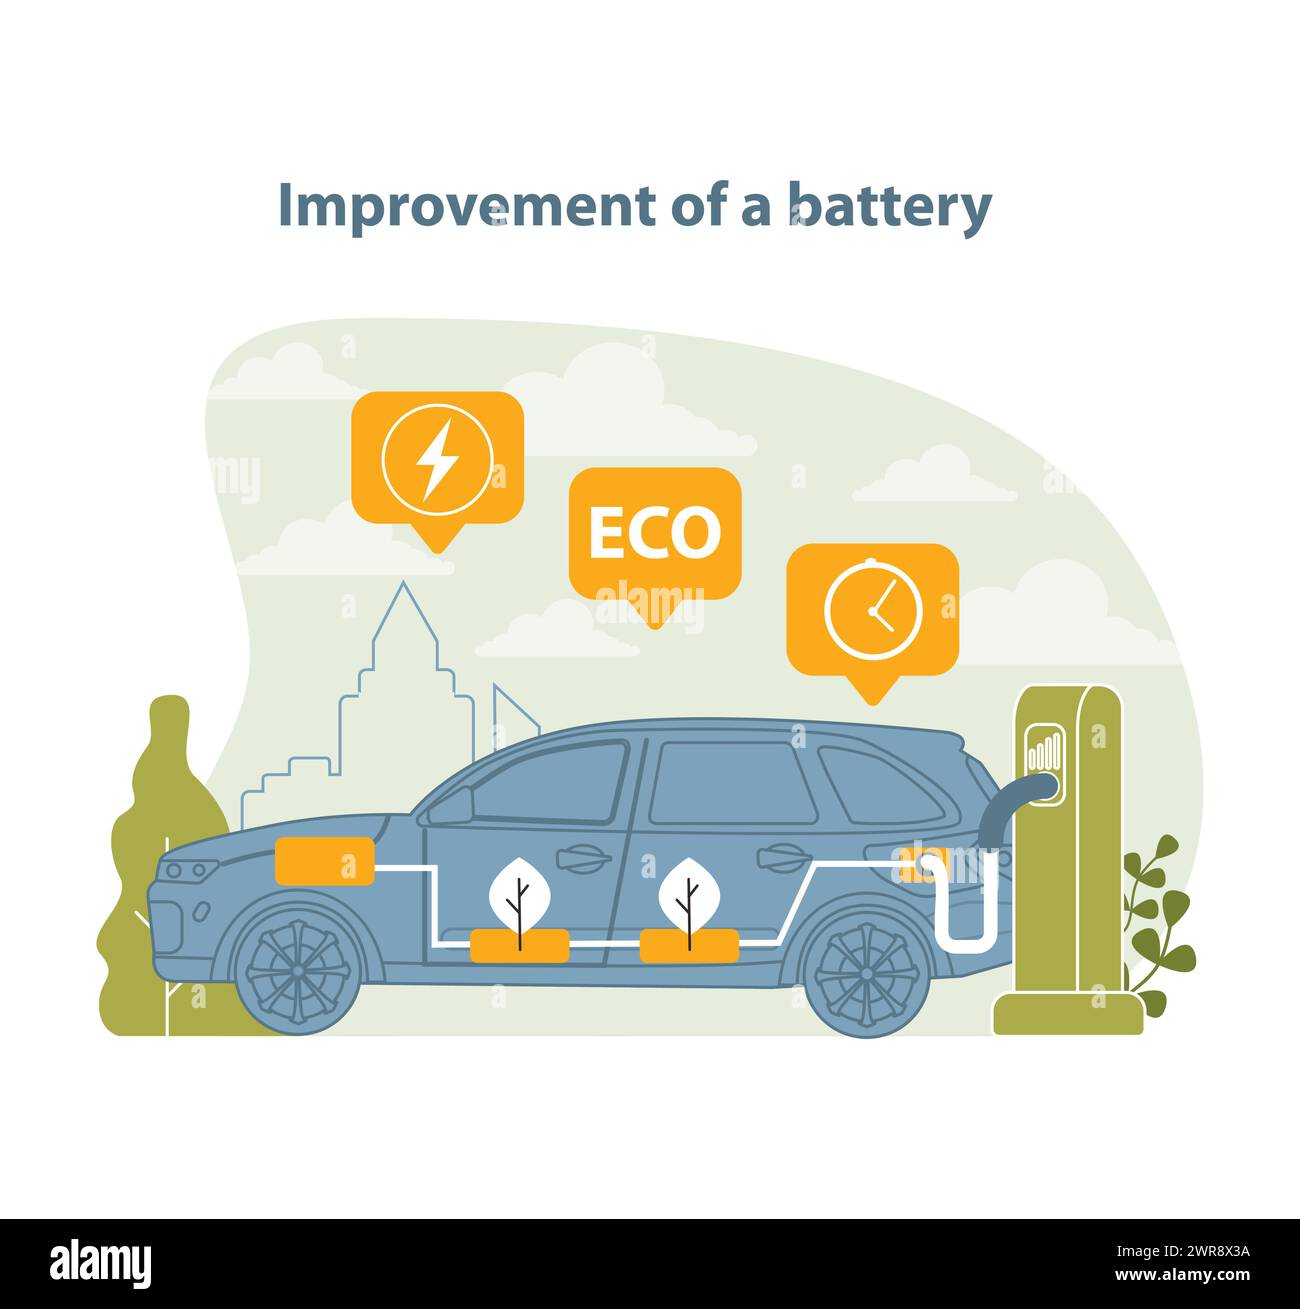 Illustrazione del miglioramento della tecnologia delle batterie. Questo vettore cattura i progressi in termini di durata della batteria dei veicoli elettrici e di eco-efficienza, con particolare attenzione all'innovazione e alla sostenibilità. Illustrazione Vettoriale